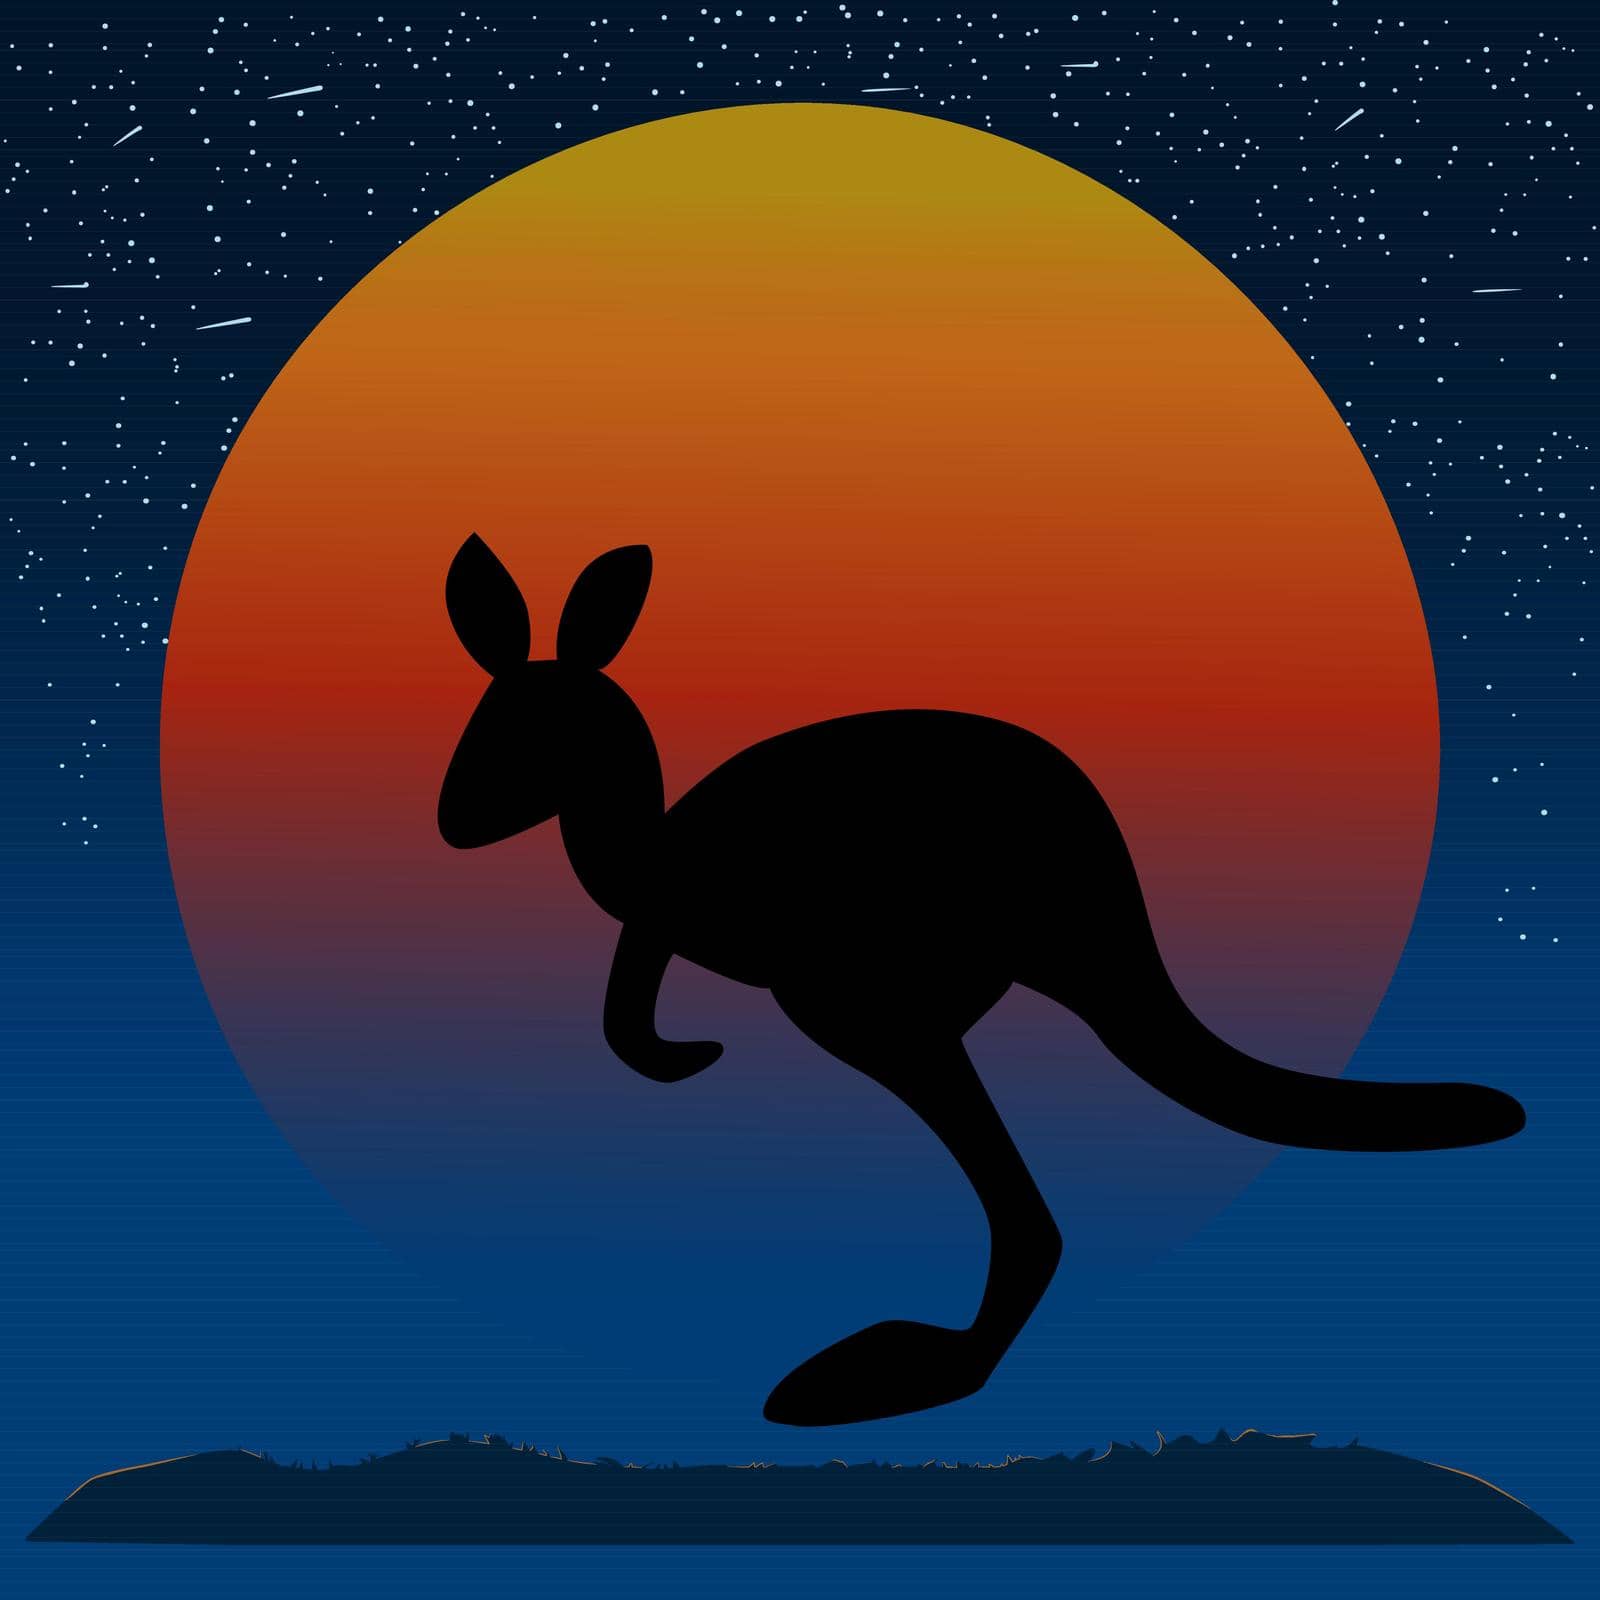 Travel poster or banner. Australia Day. Kanga at orange full moon in desert. Stock vector illustration